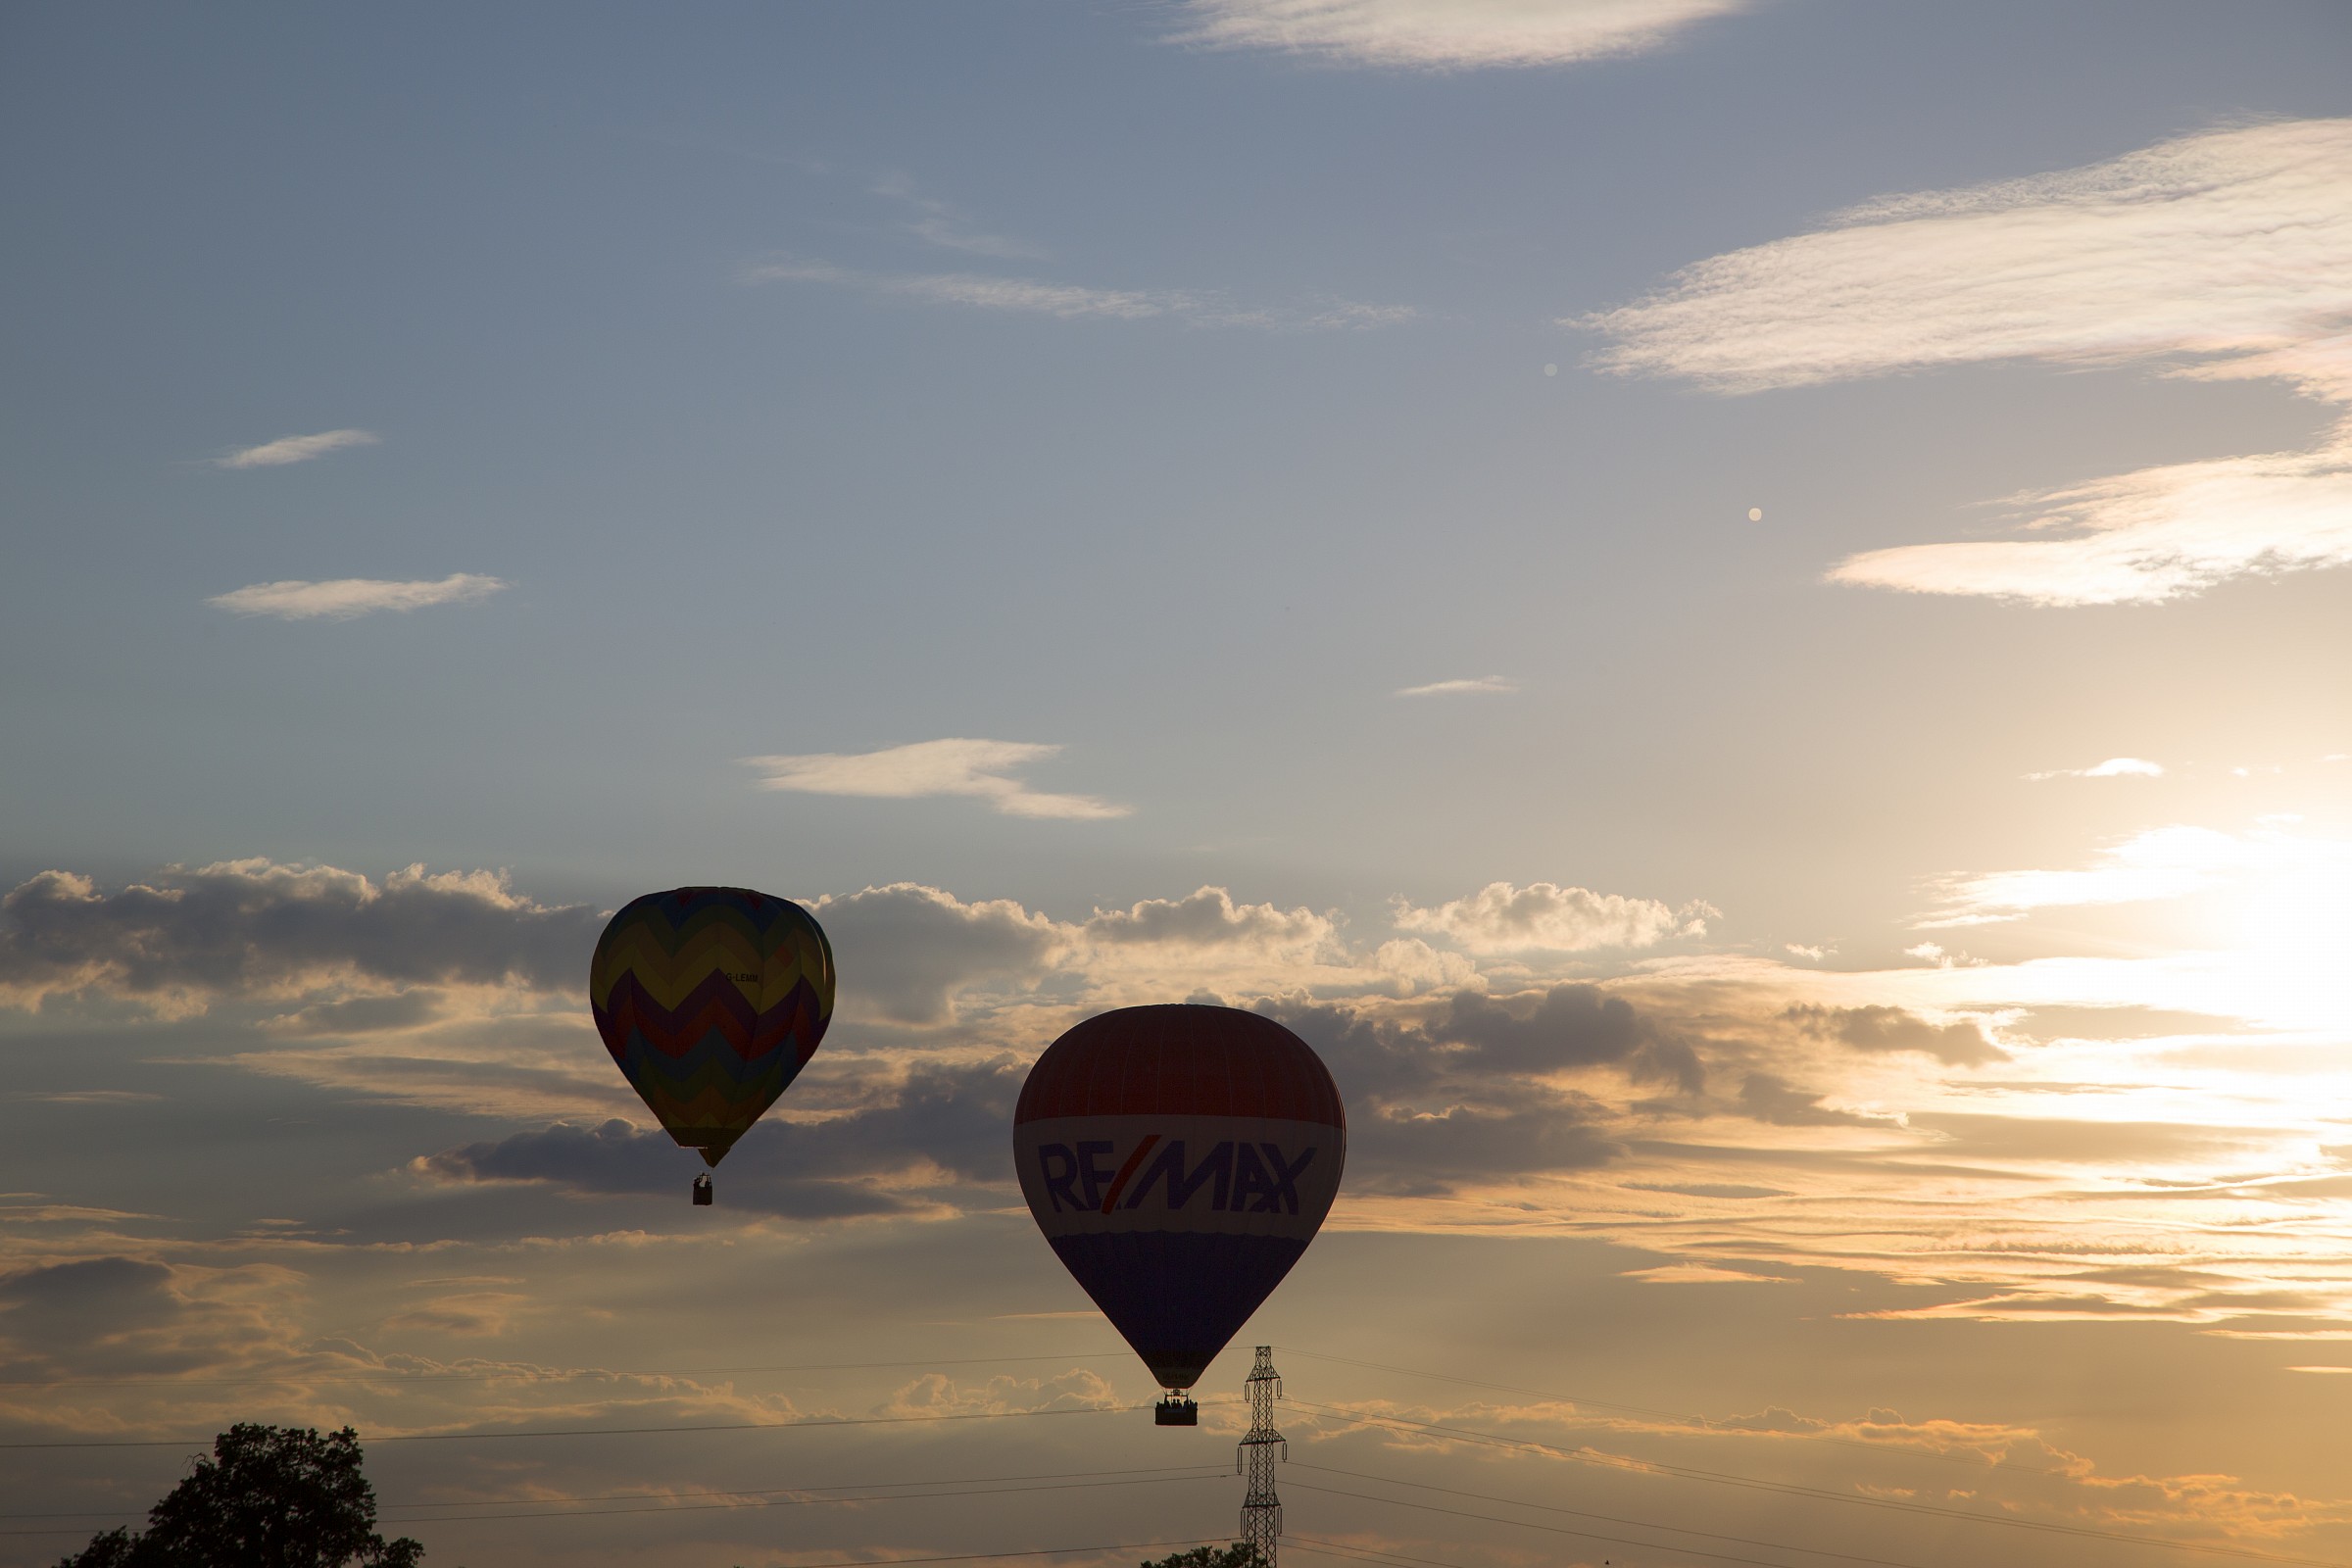 Hot air balloons at sunset...